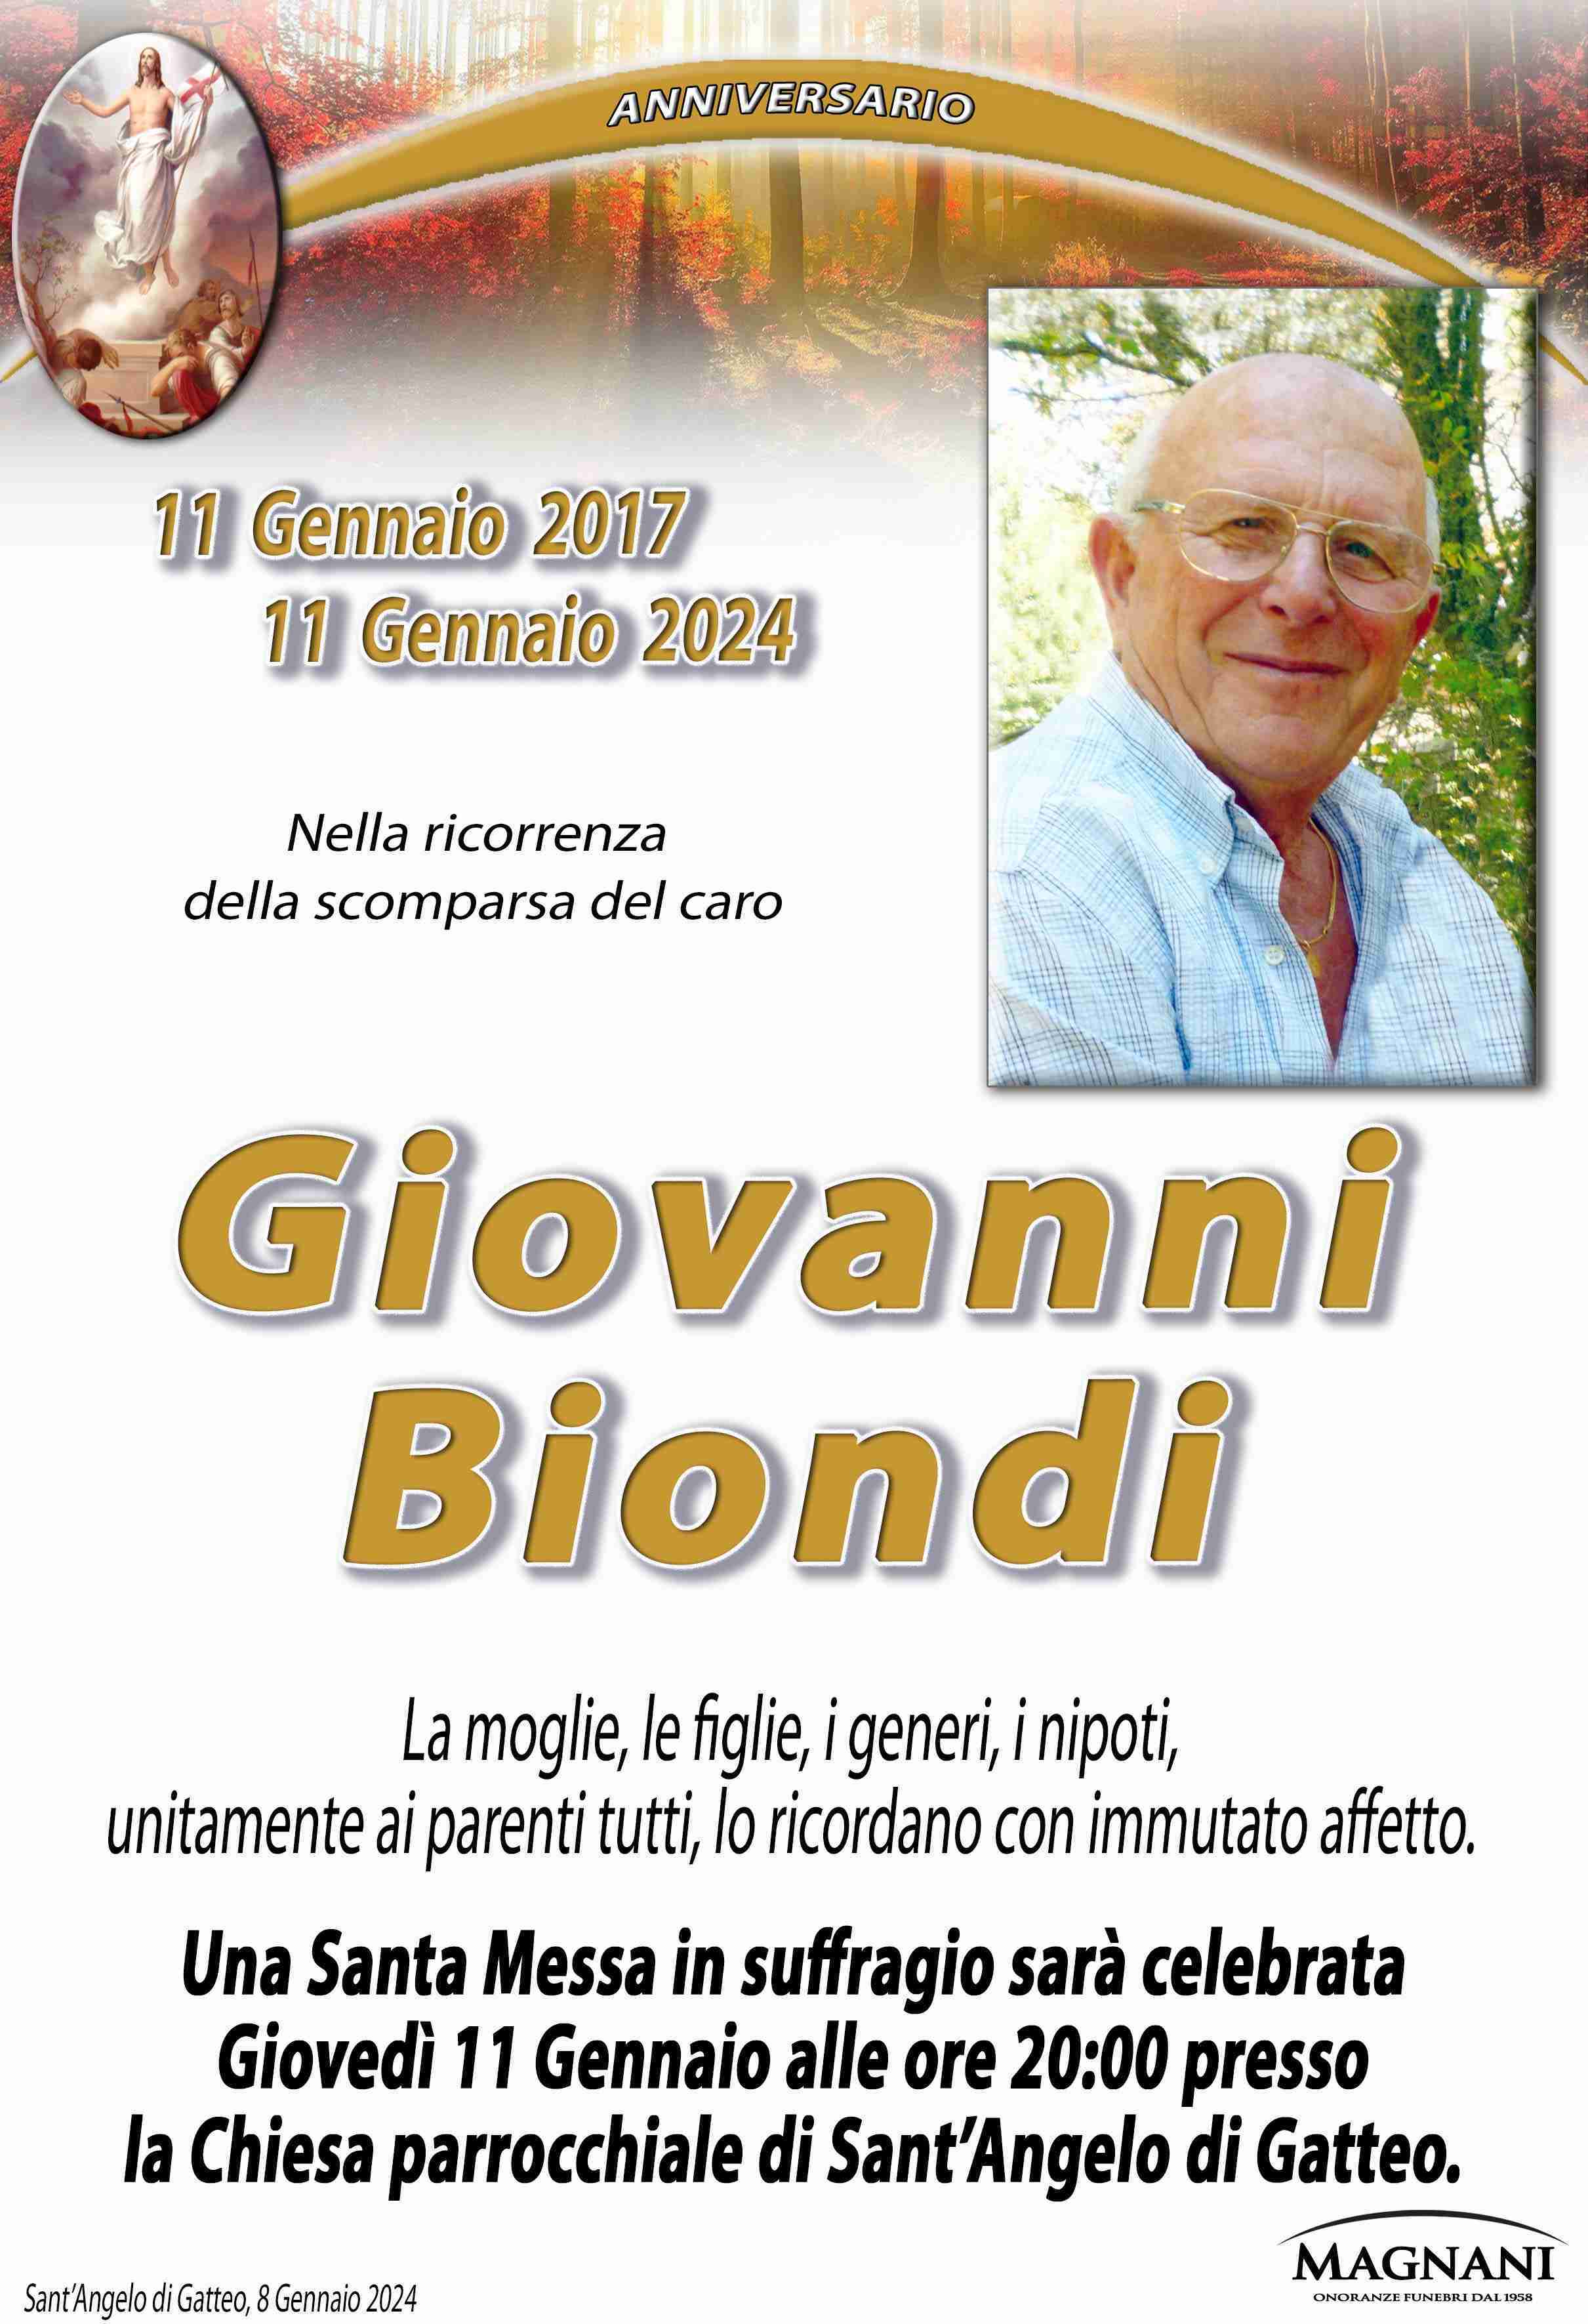 Biondi Giovanni